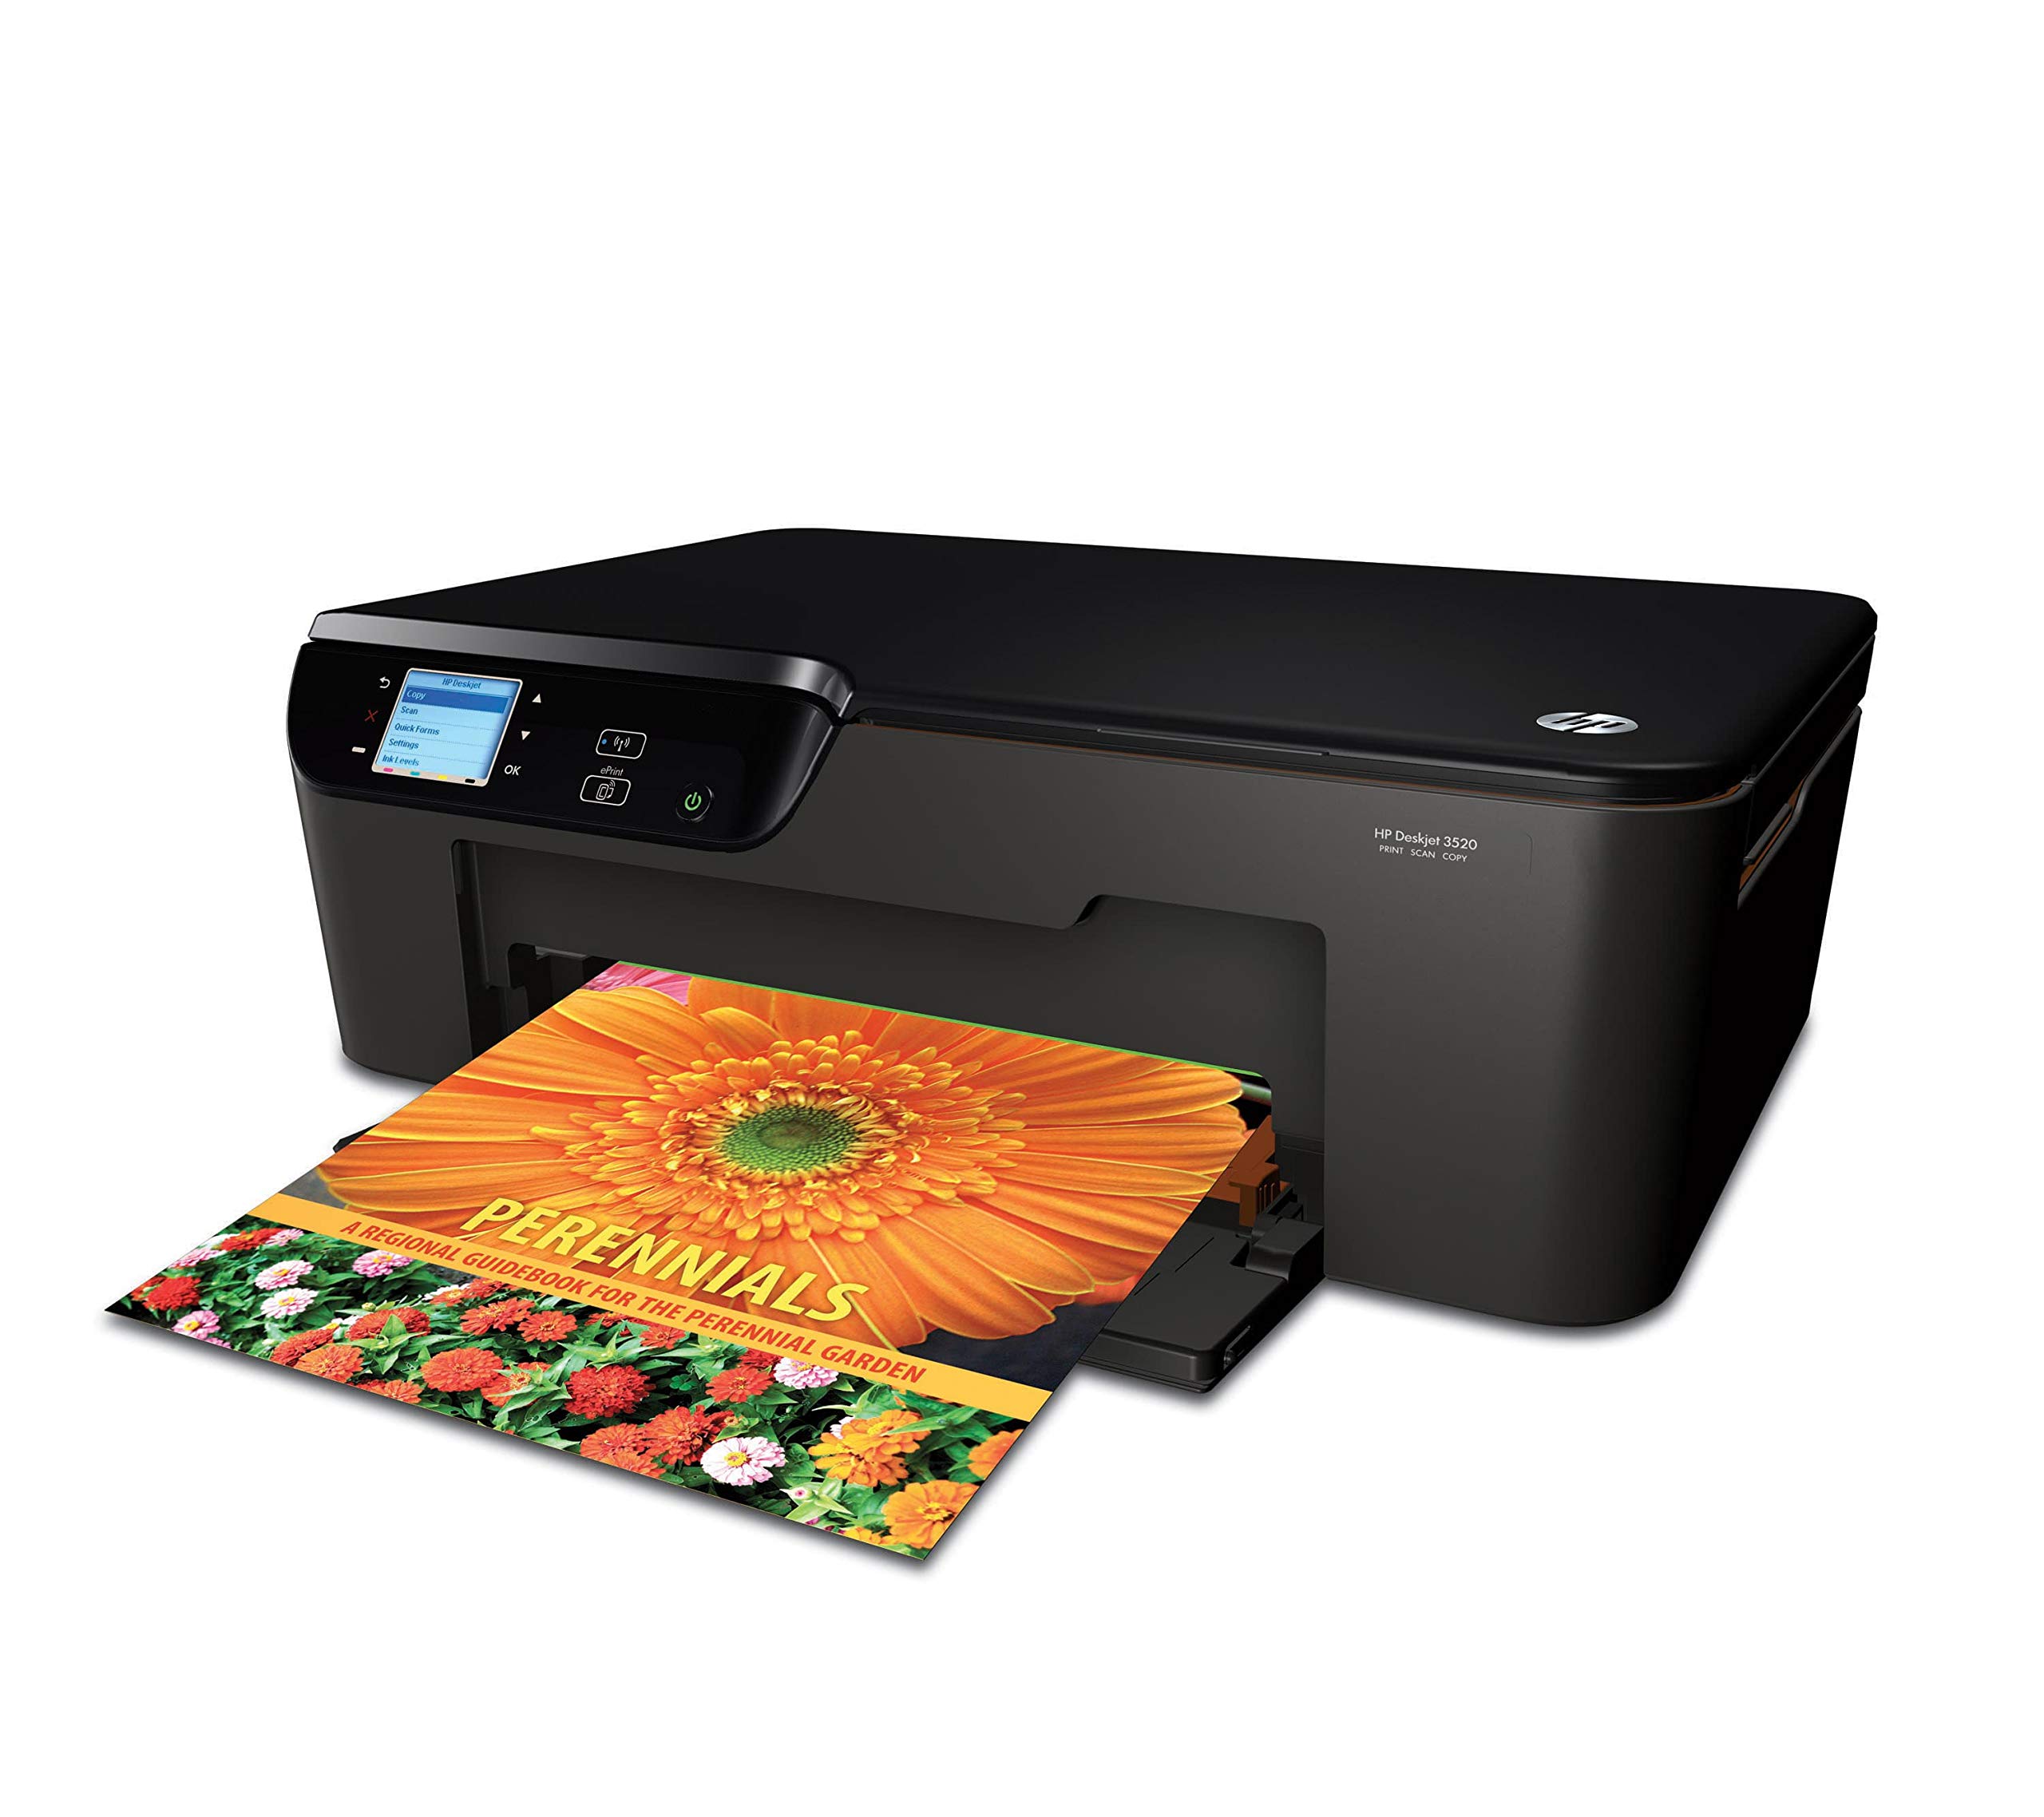 Deskjet 3520 e-All-in-One Printer series